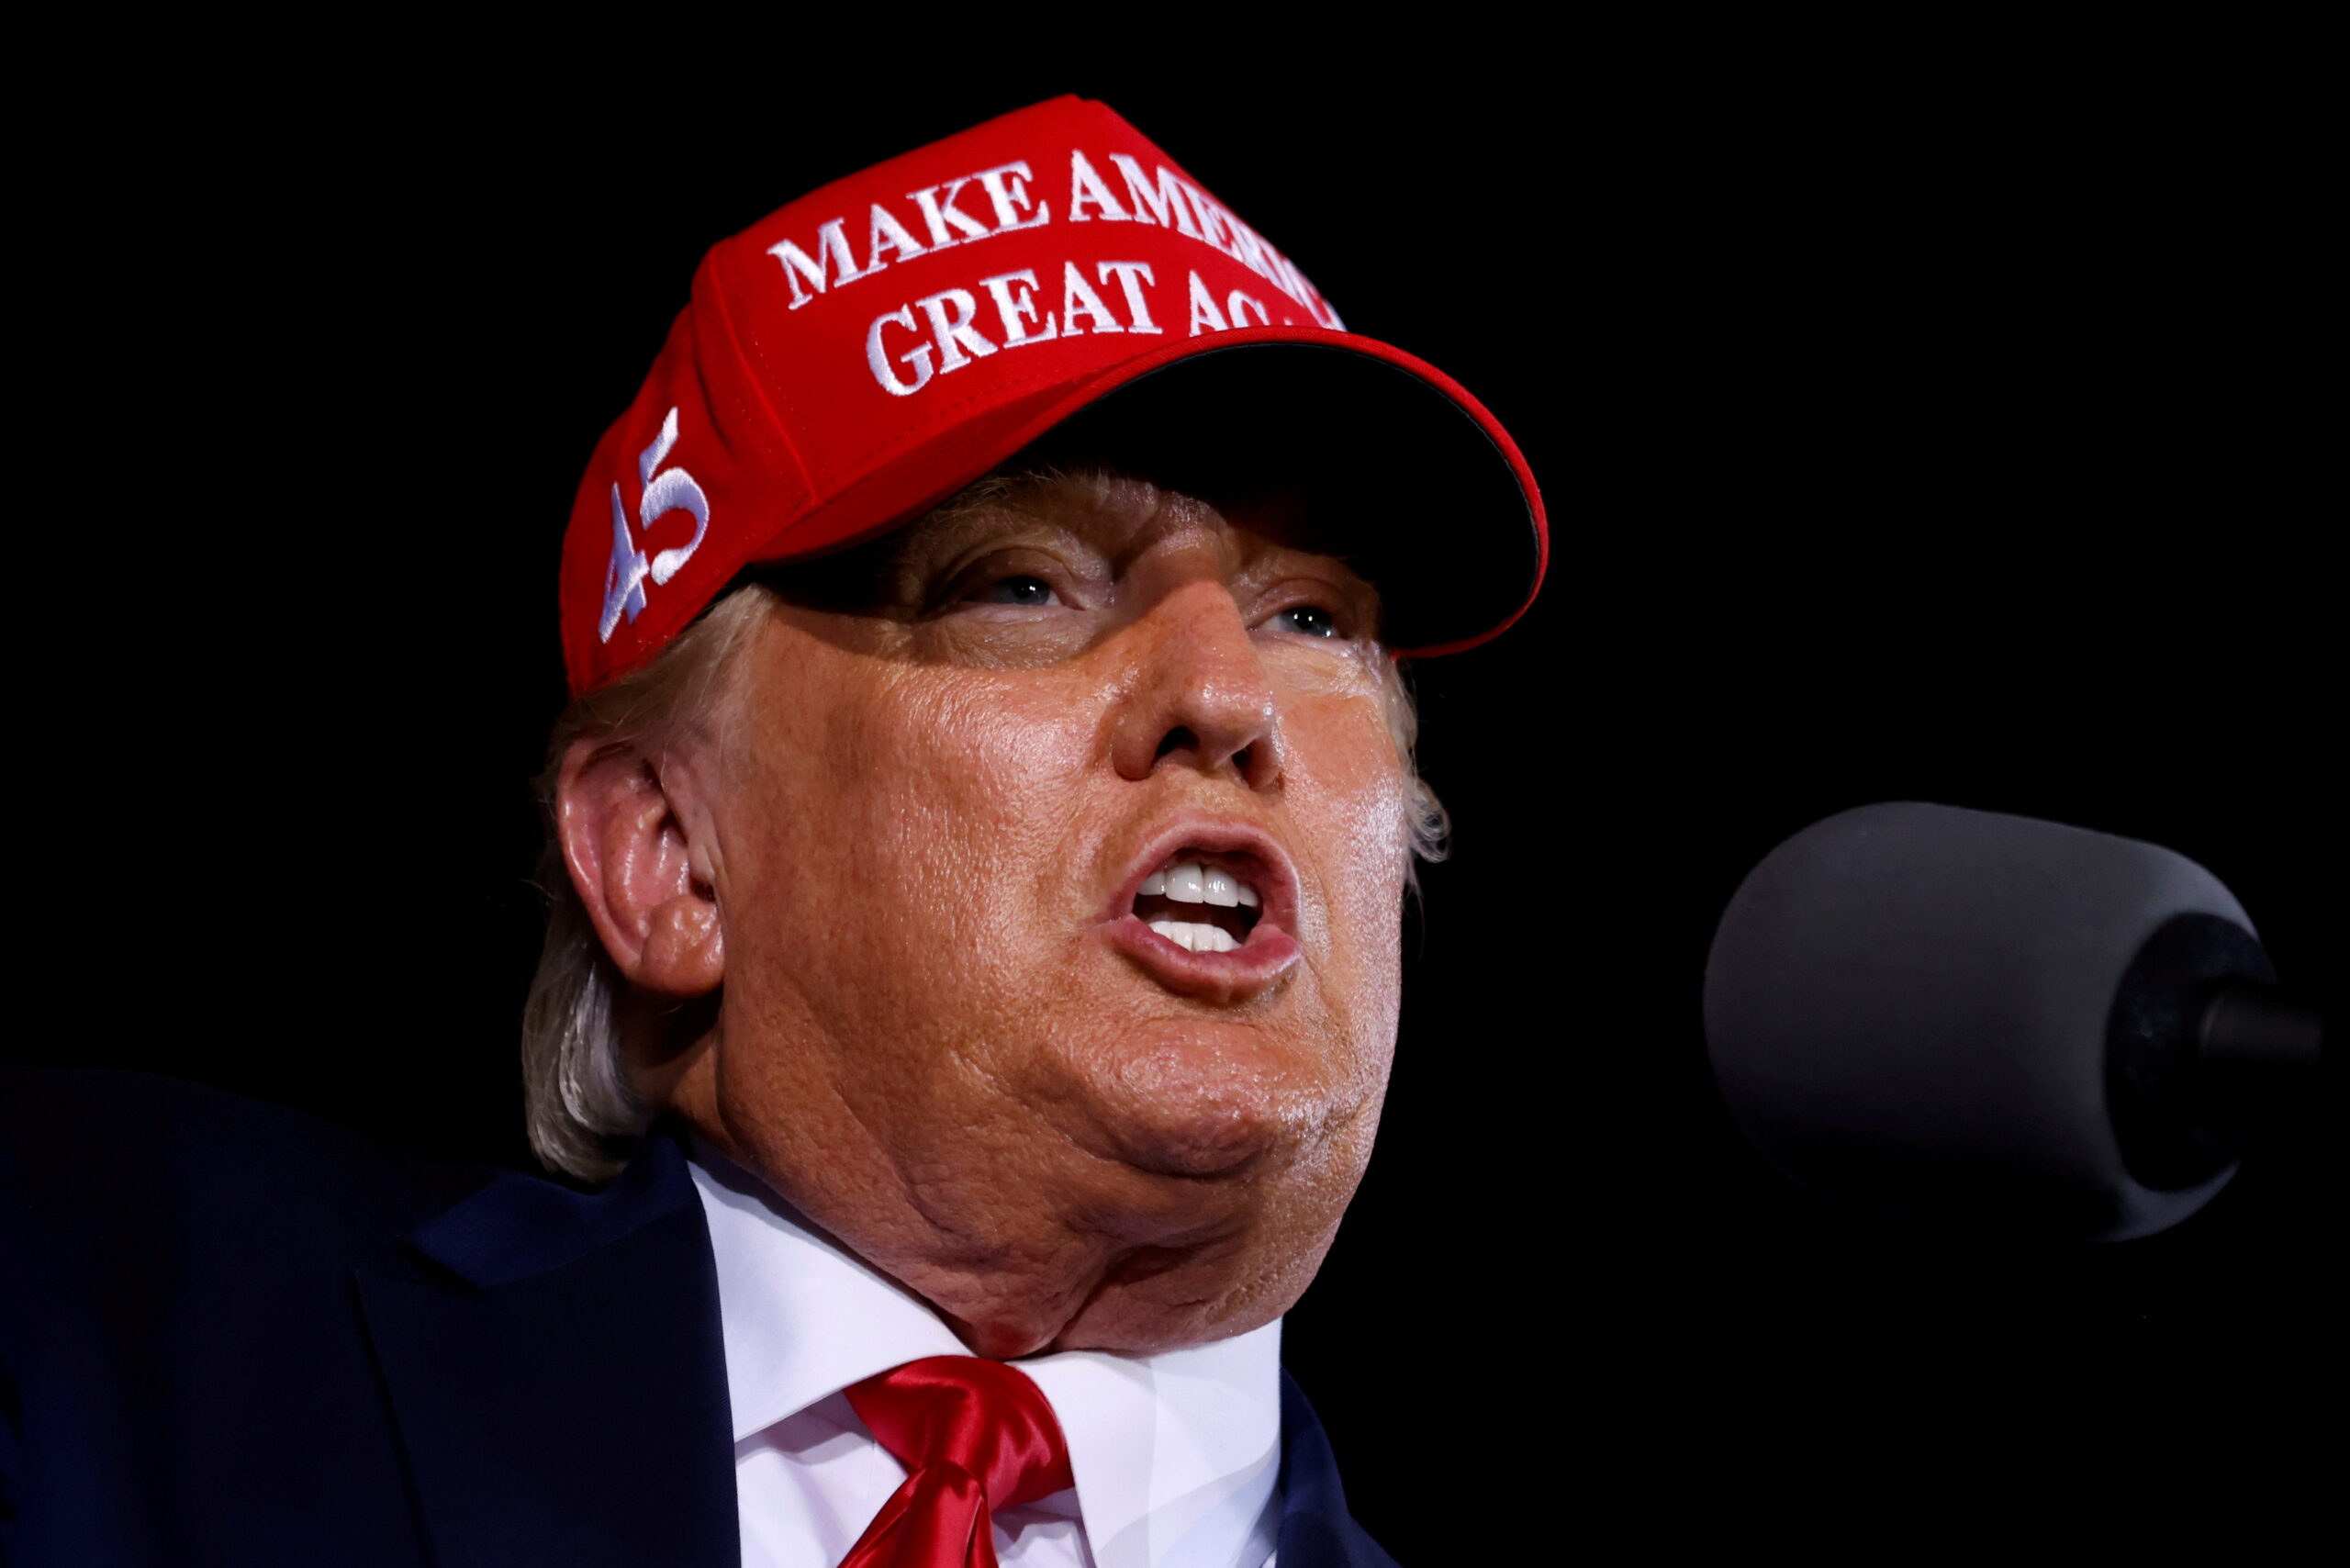 El presidente de Estados Unidos, Donald Trump, se dirige a sus partidarios en un mitin de campaña en Opa-Locka, Florida. Noviembre 2, 2020. REUTERS/Carlos Barria